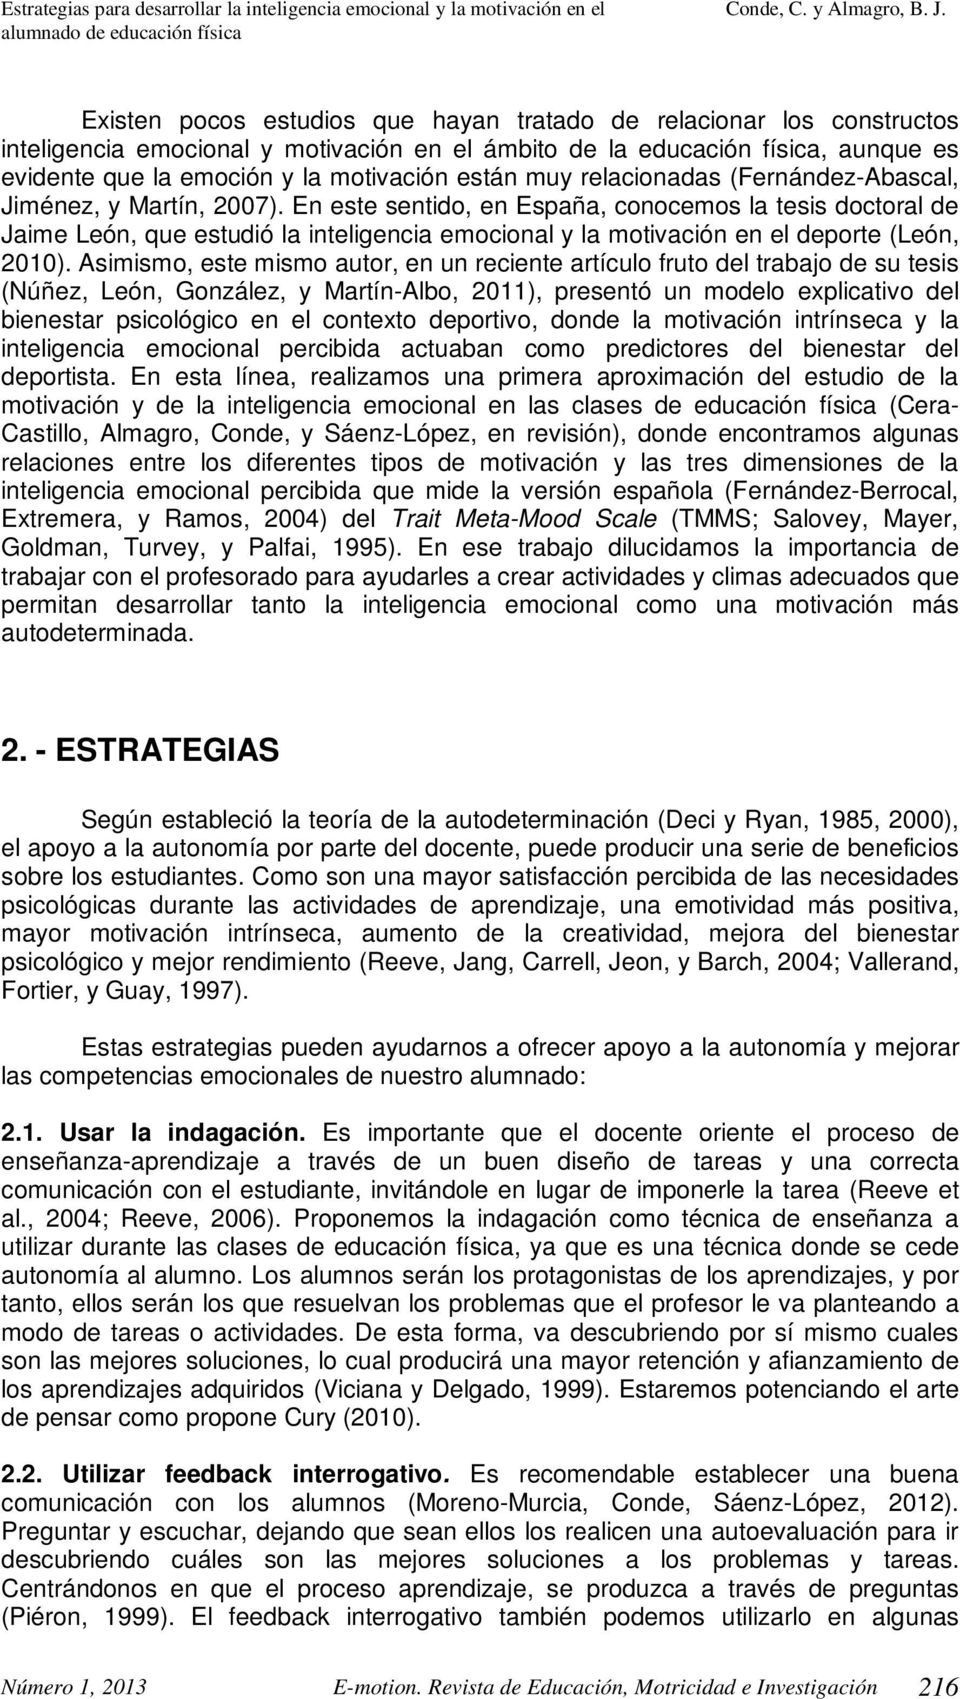 En este sentido, en España, conocemos la tesis doctoral de Jaime León, que estudió la inteligencia emocional y la motivación en el deporte (León, 2010).